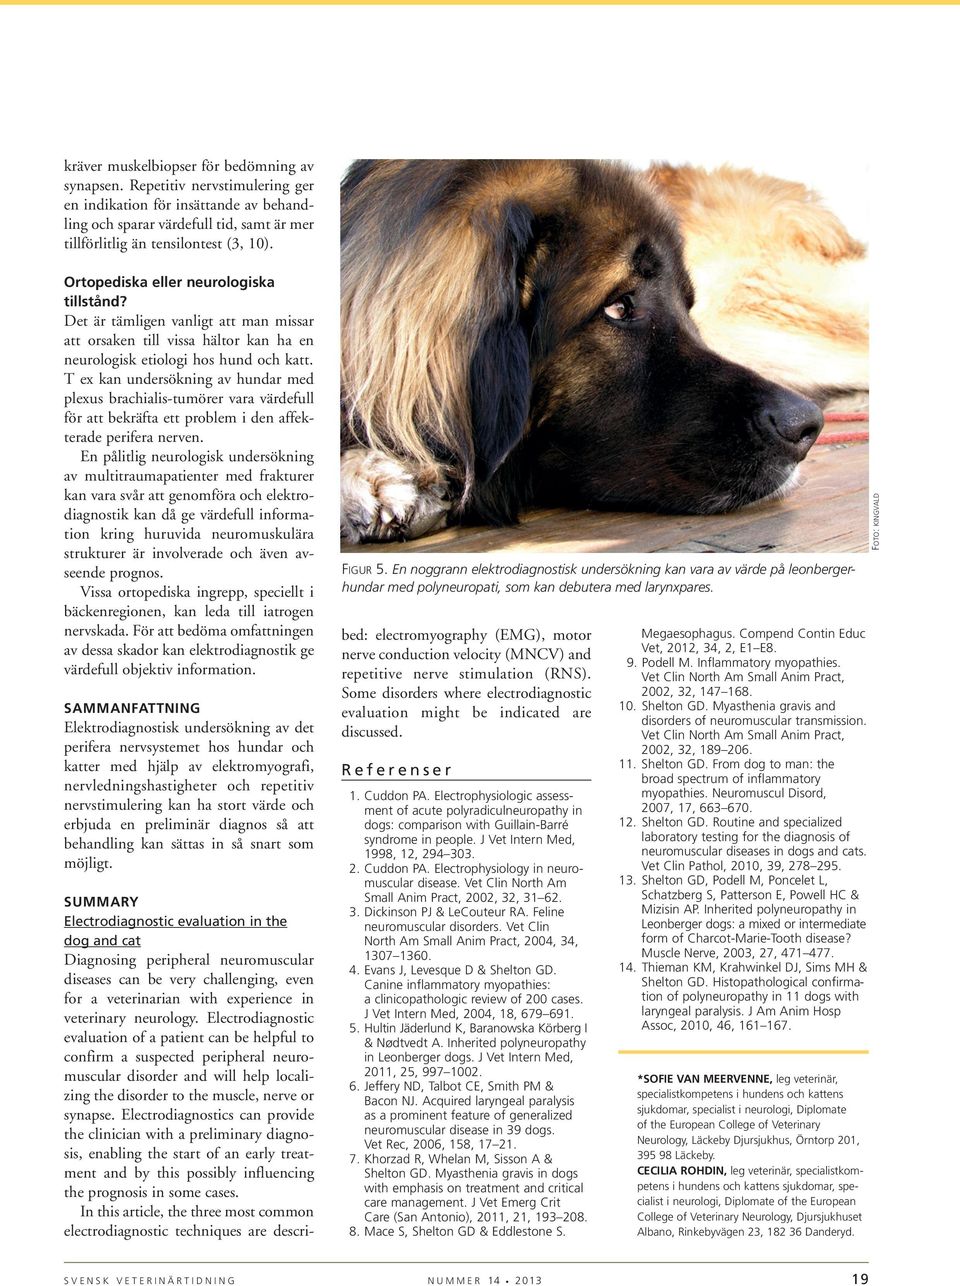 T ex kan undersökning av hundar med plexus brachialis-tumörer vara värdefull för att bekräfta ett problem i den affekterade perifera nerven.